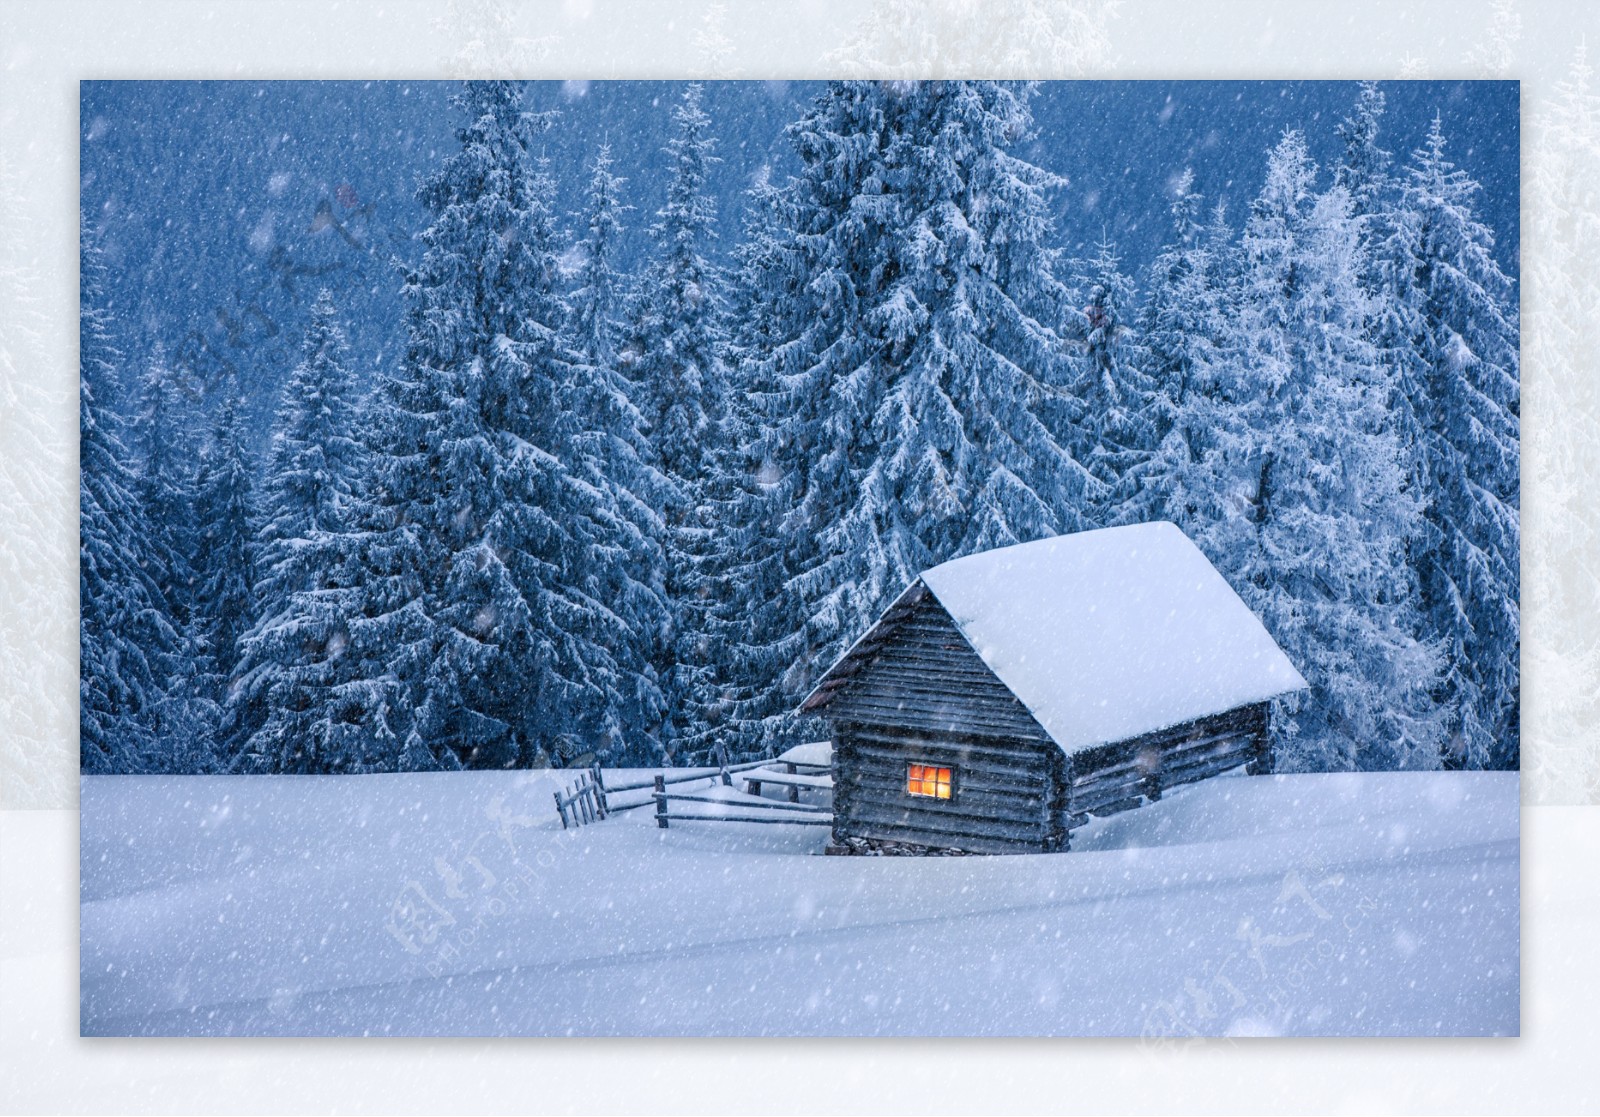 雪中的小屋11813_冬雪系列_风景风光类_图库壁纸_68Design